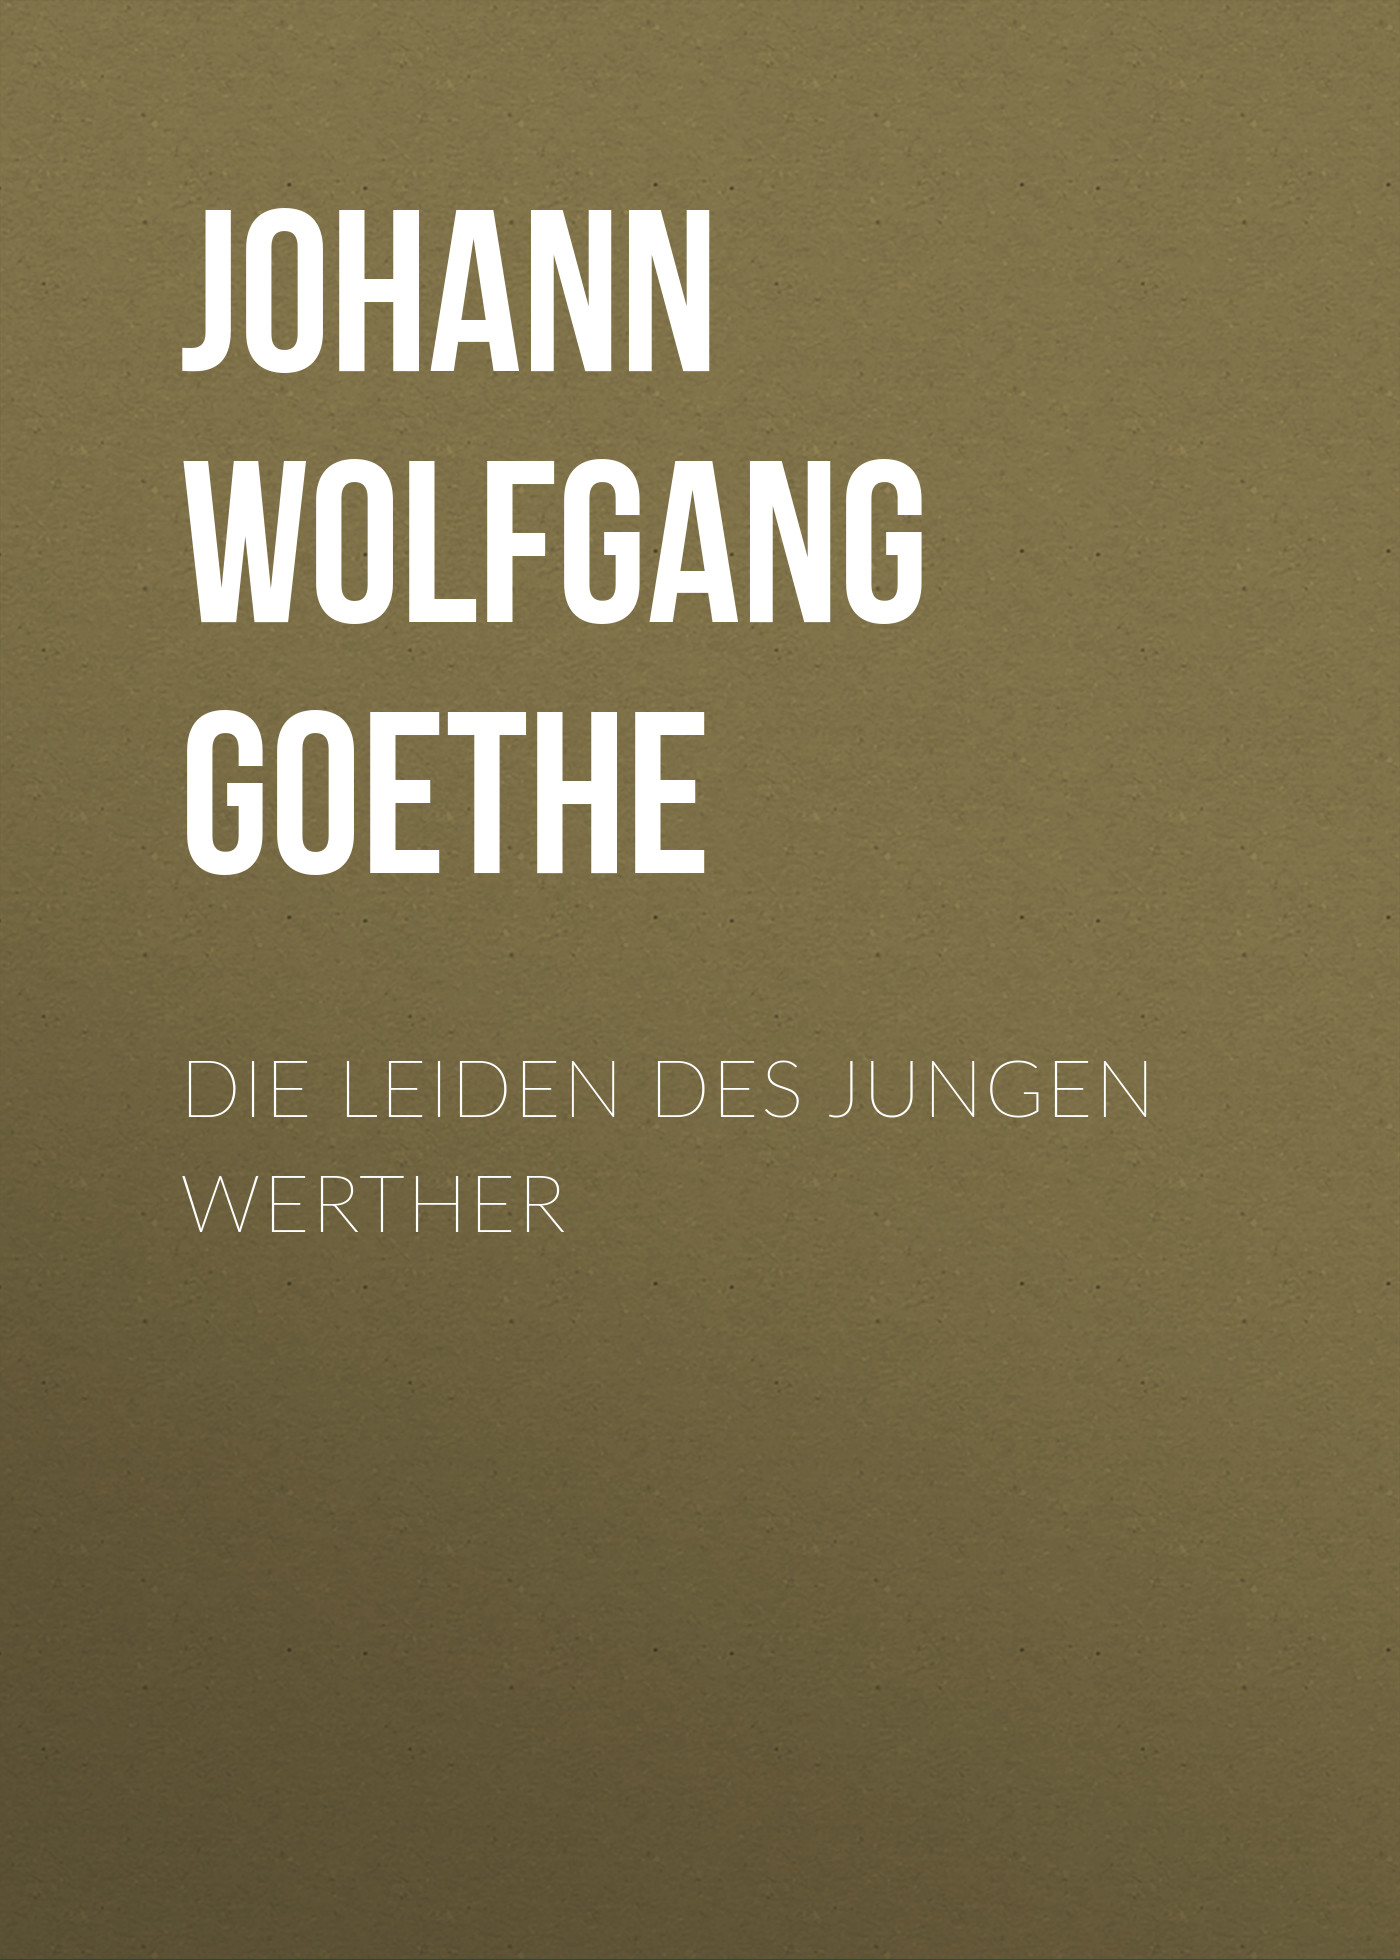 Книга Die Leiden des jungen Werther из серии , созданная Johann Von goethe, может относится к жанру Зарубежная классика. Стоимость электронной книги Die Leiden des jungen Werther с идентификатором 48631612 составляет 0 руб.